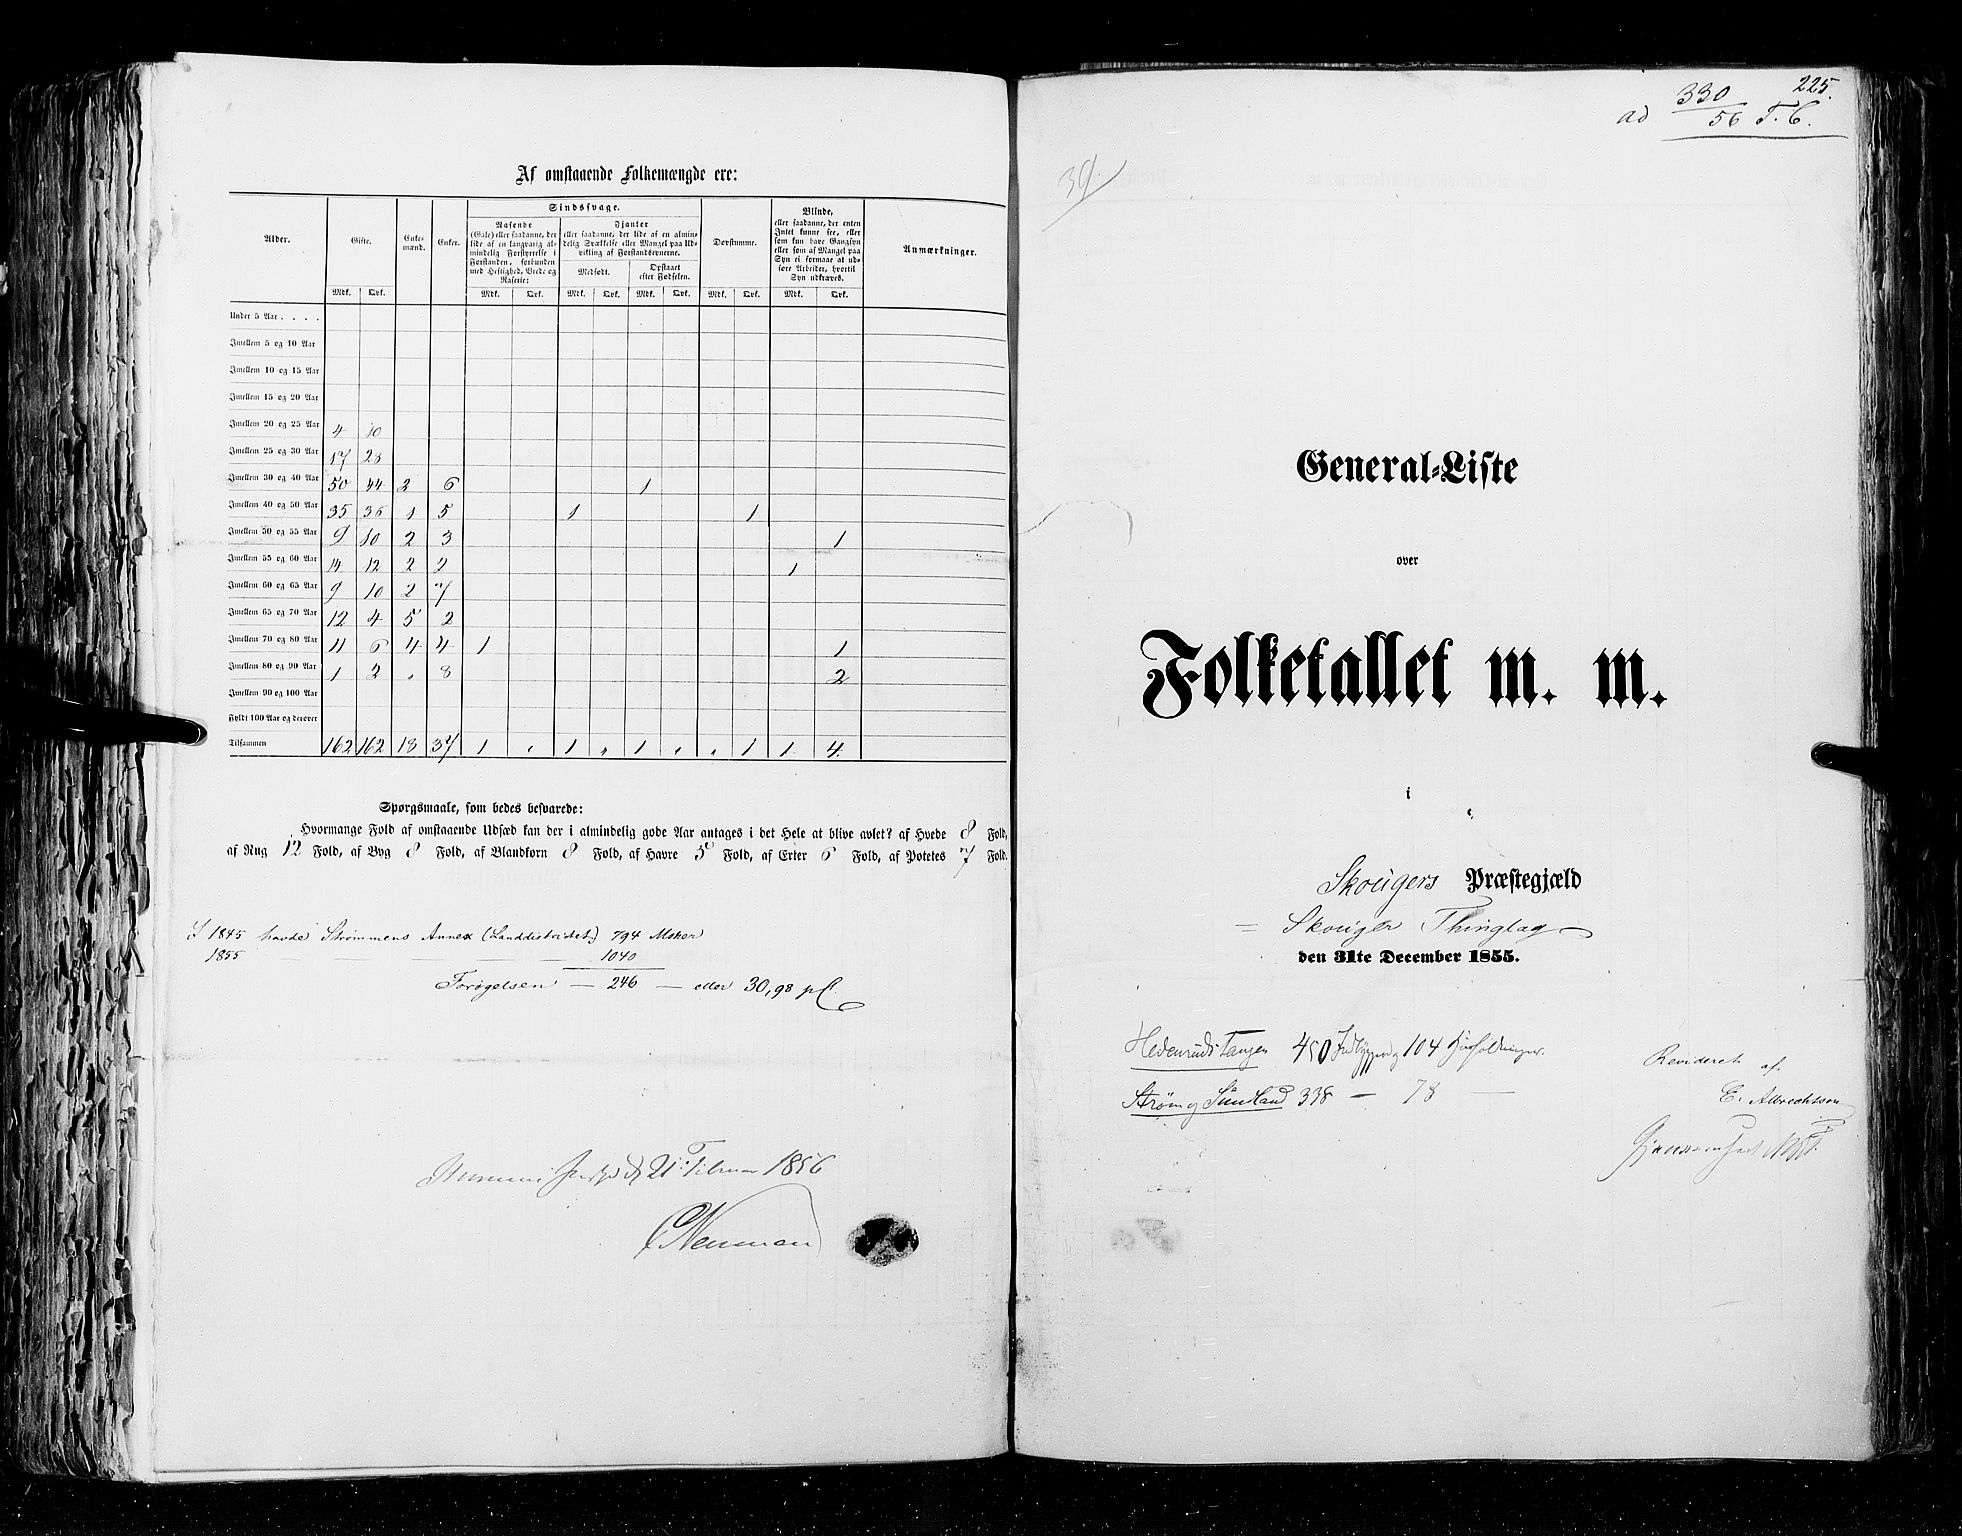 RA, Census 1855, vol. 2: Kristians amt, Buskerud amt og Jarlsberg og Larvik amt, 1855, p. 225